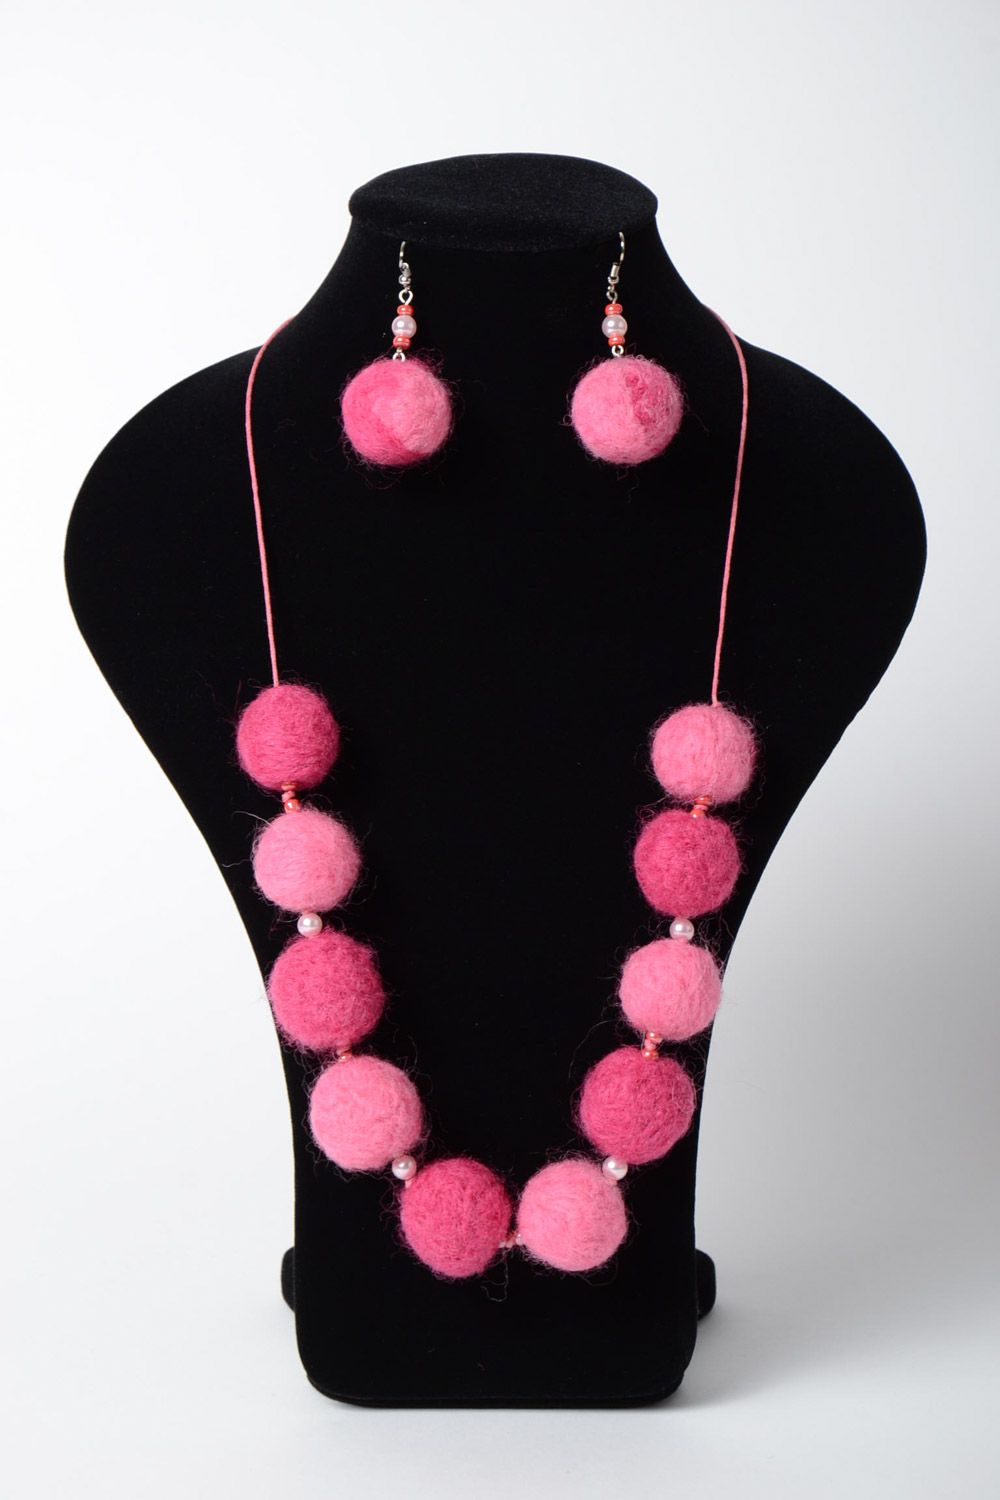 Accesorios en técnica de fieltro pendientes y collar de color rosado hechos a mano foto 5